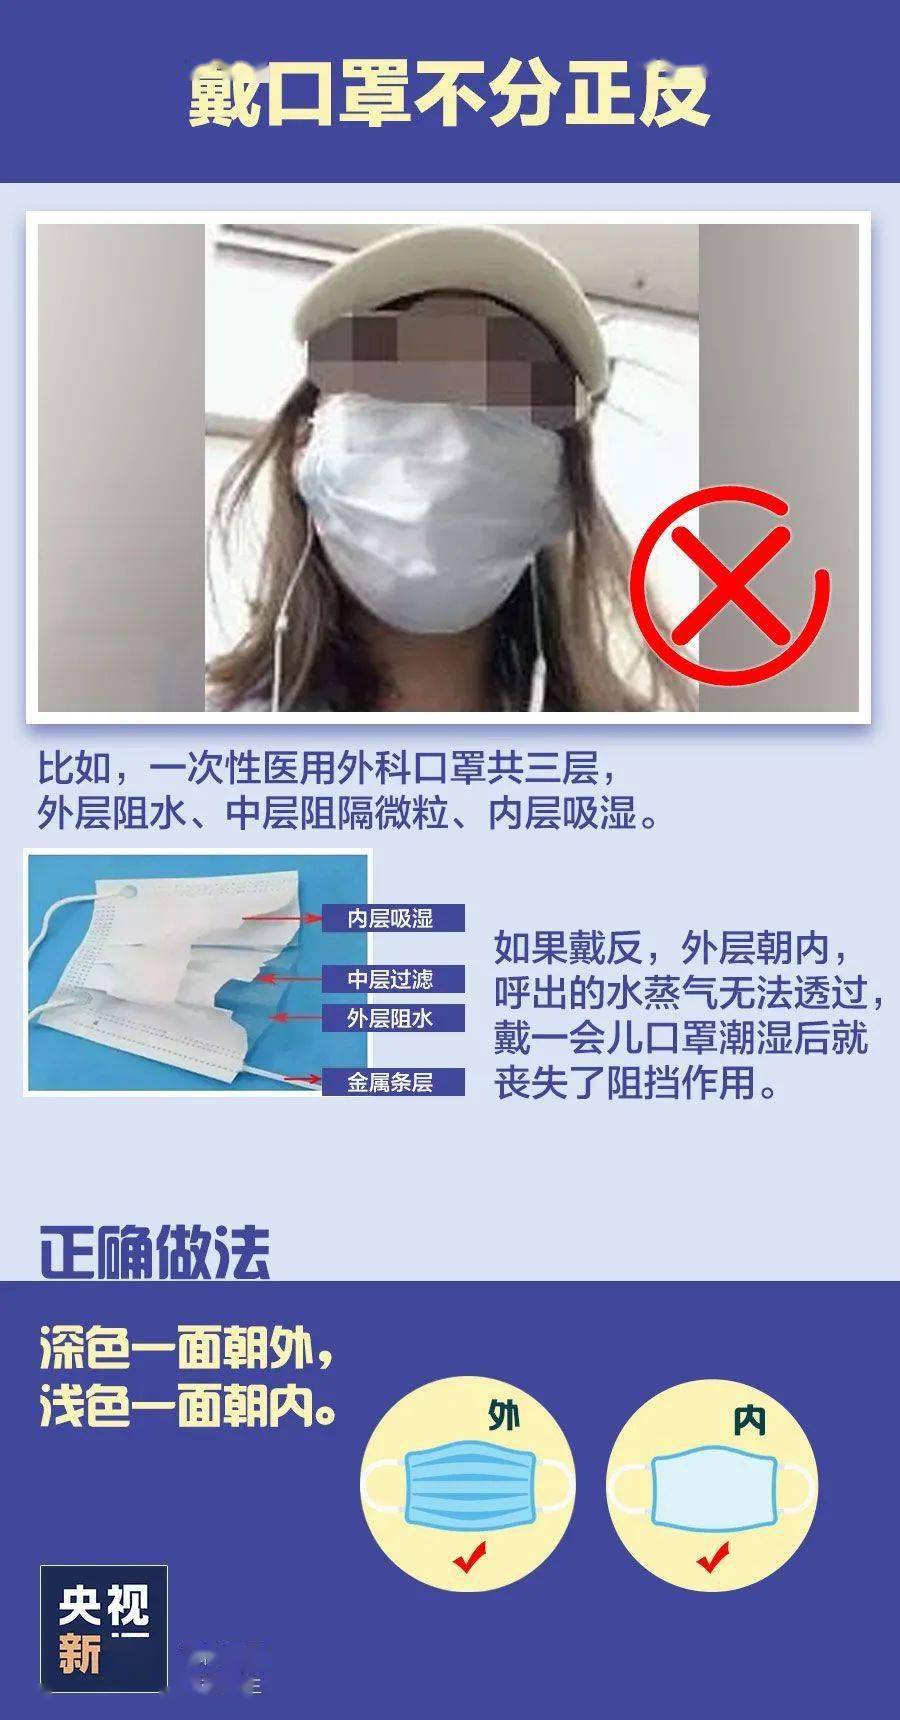 提醒 这样戴口罩会增加传染风险